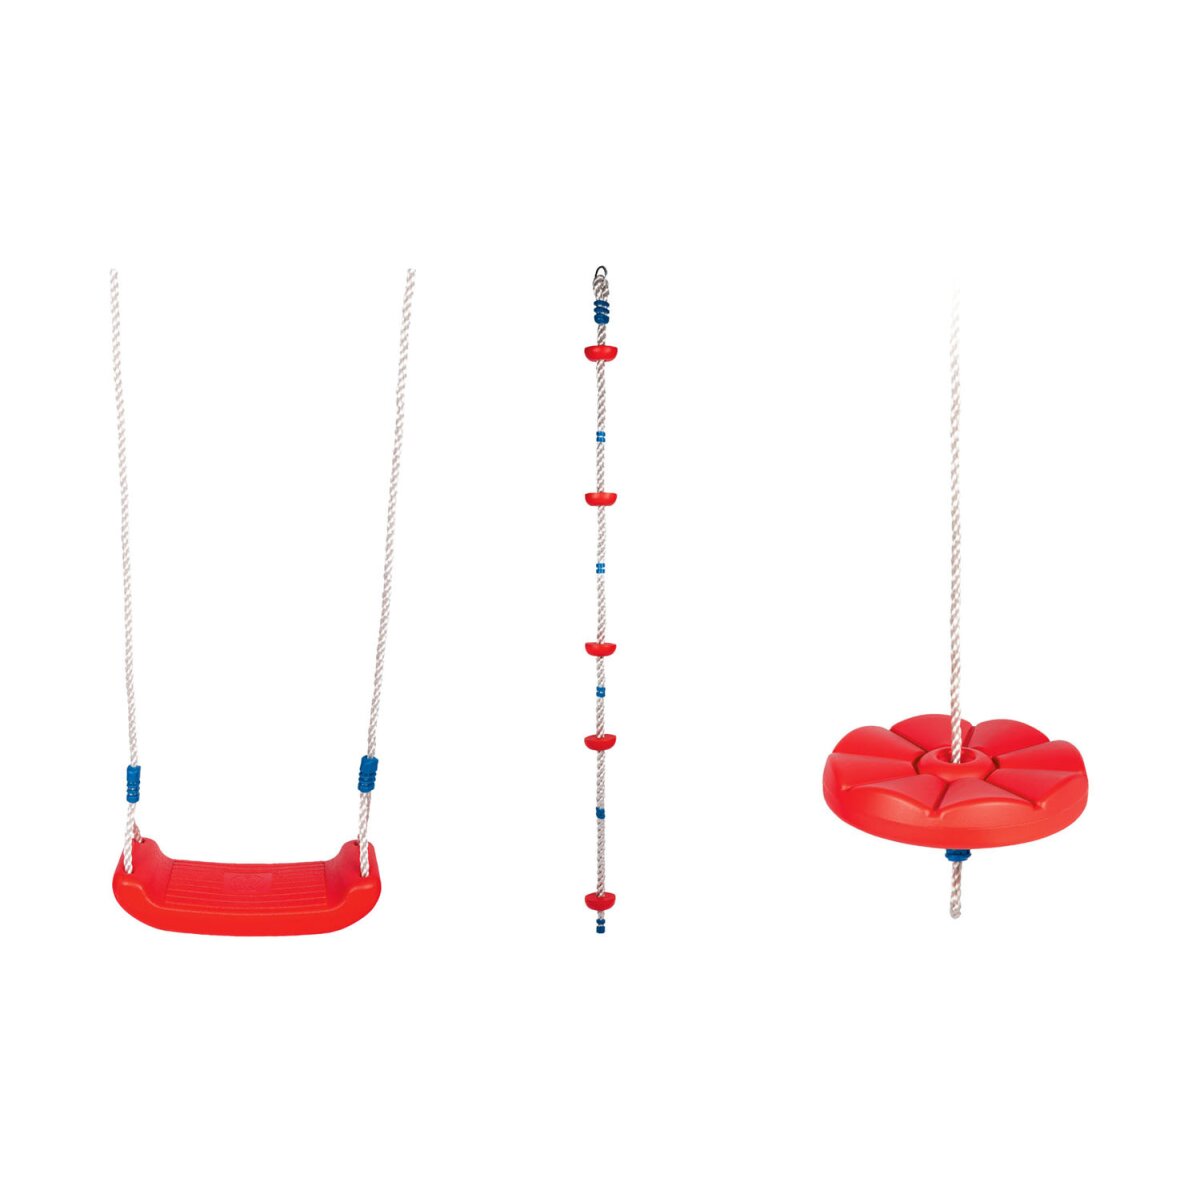 Playtive Schaukel, mit strapazierfähigen Seilen - B-Ware, 9,09 € | Luftmatratze & Wasserspielzeug